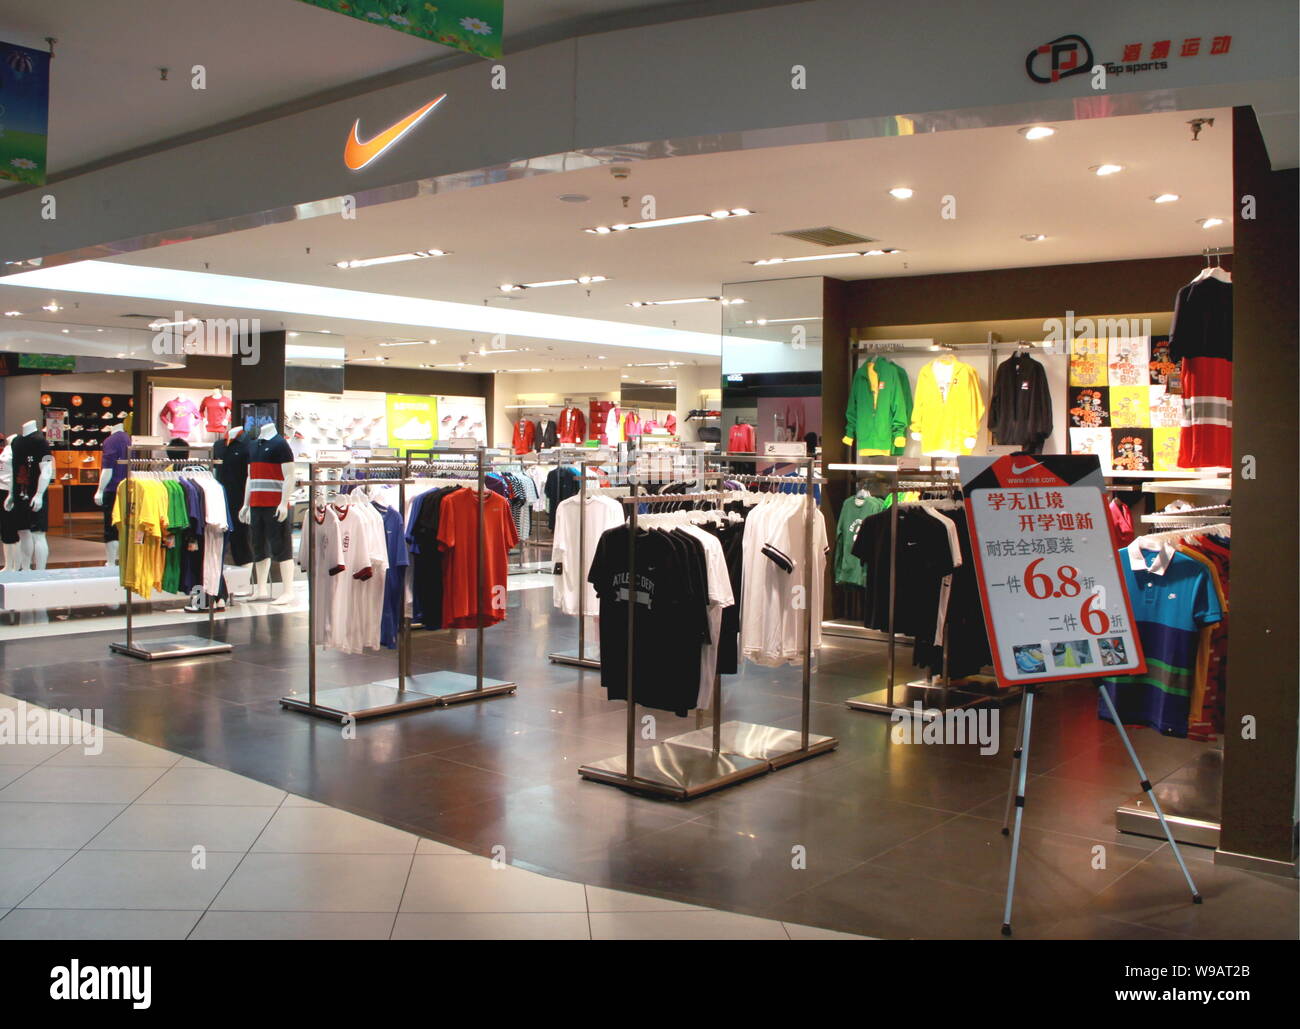 Nike Store Banque d'image et photos - Page 2 - Alamy